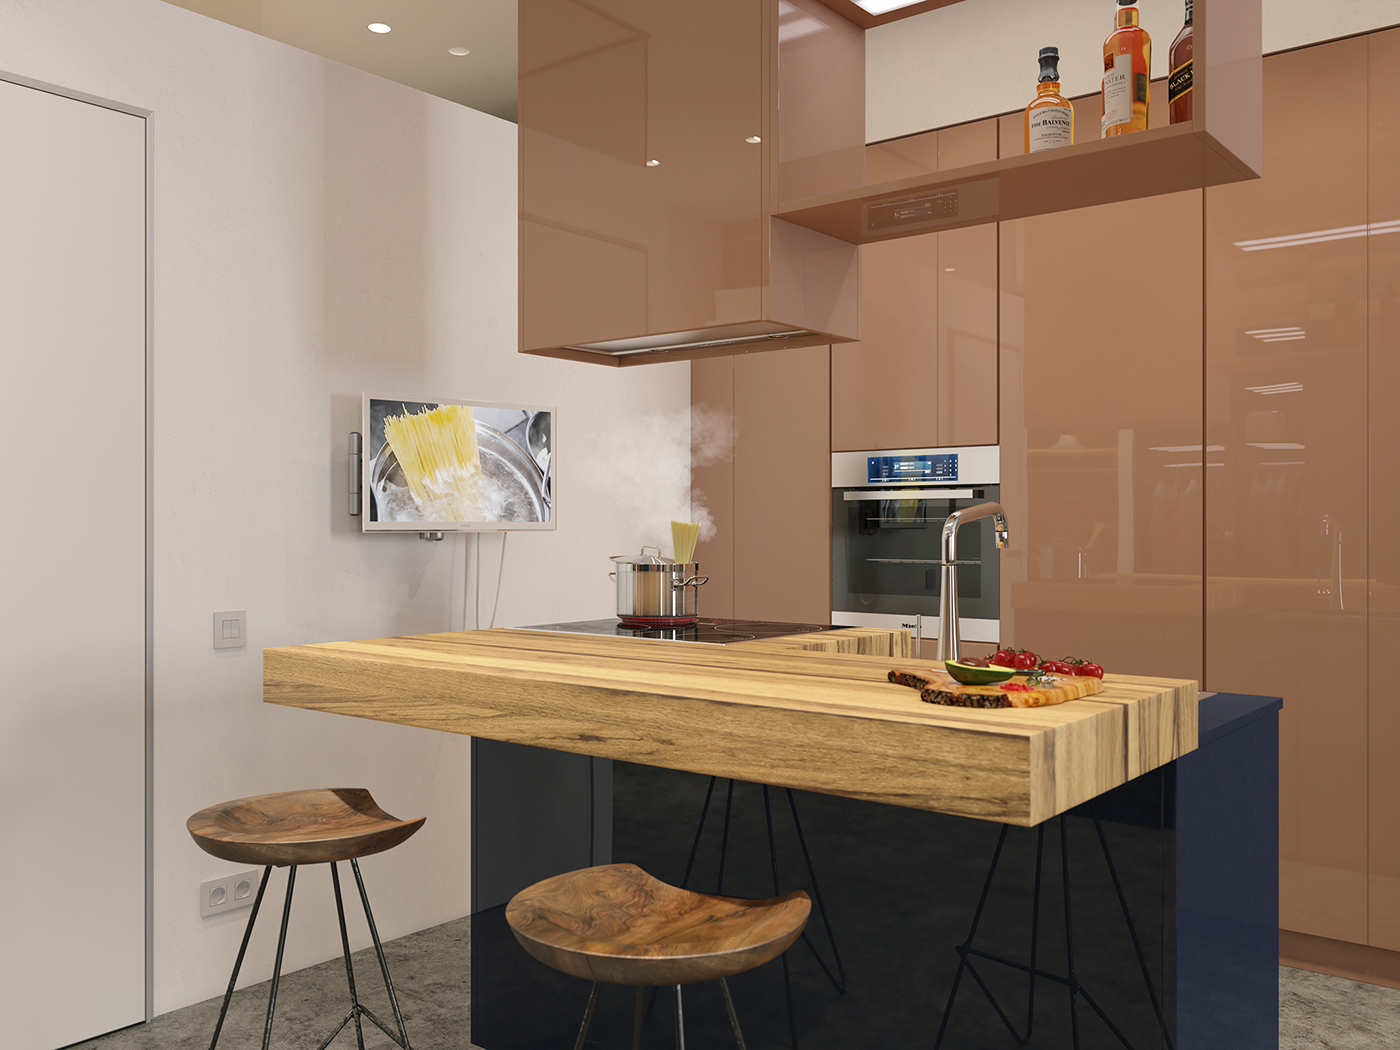 3ds max V-ray archviz inteiror interior design  Render 3D kitchen